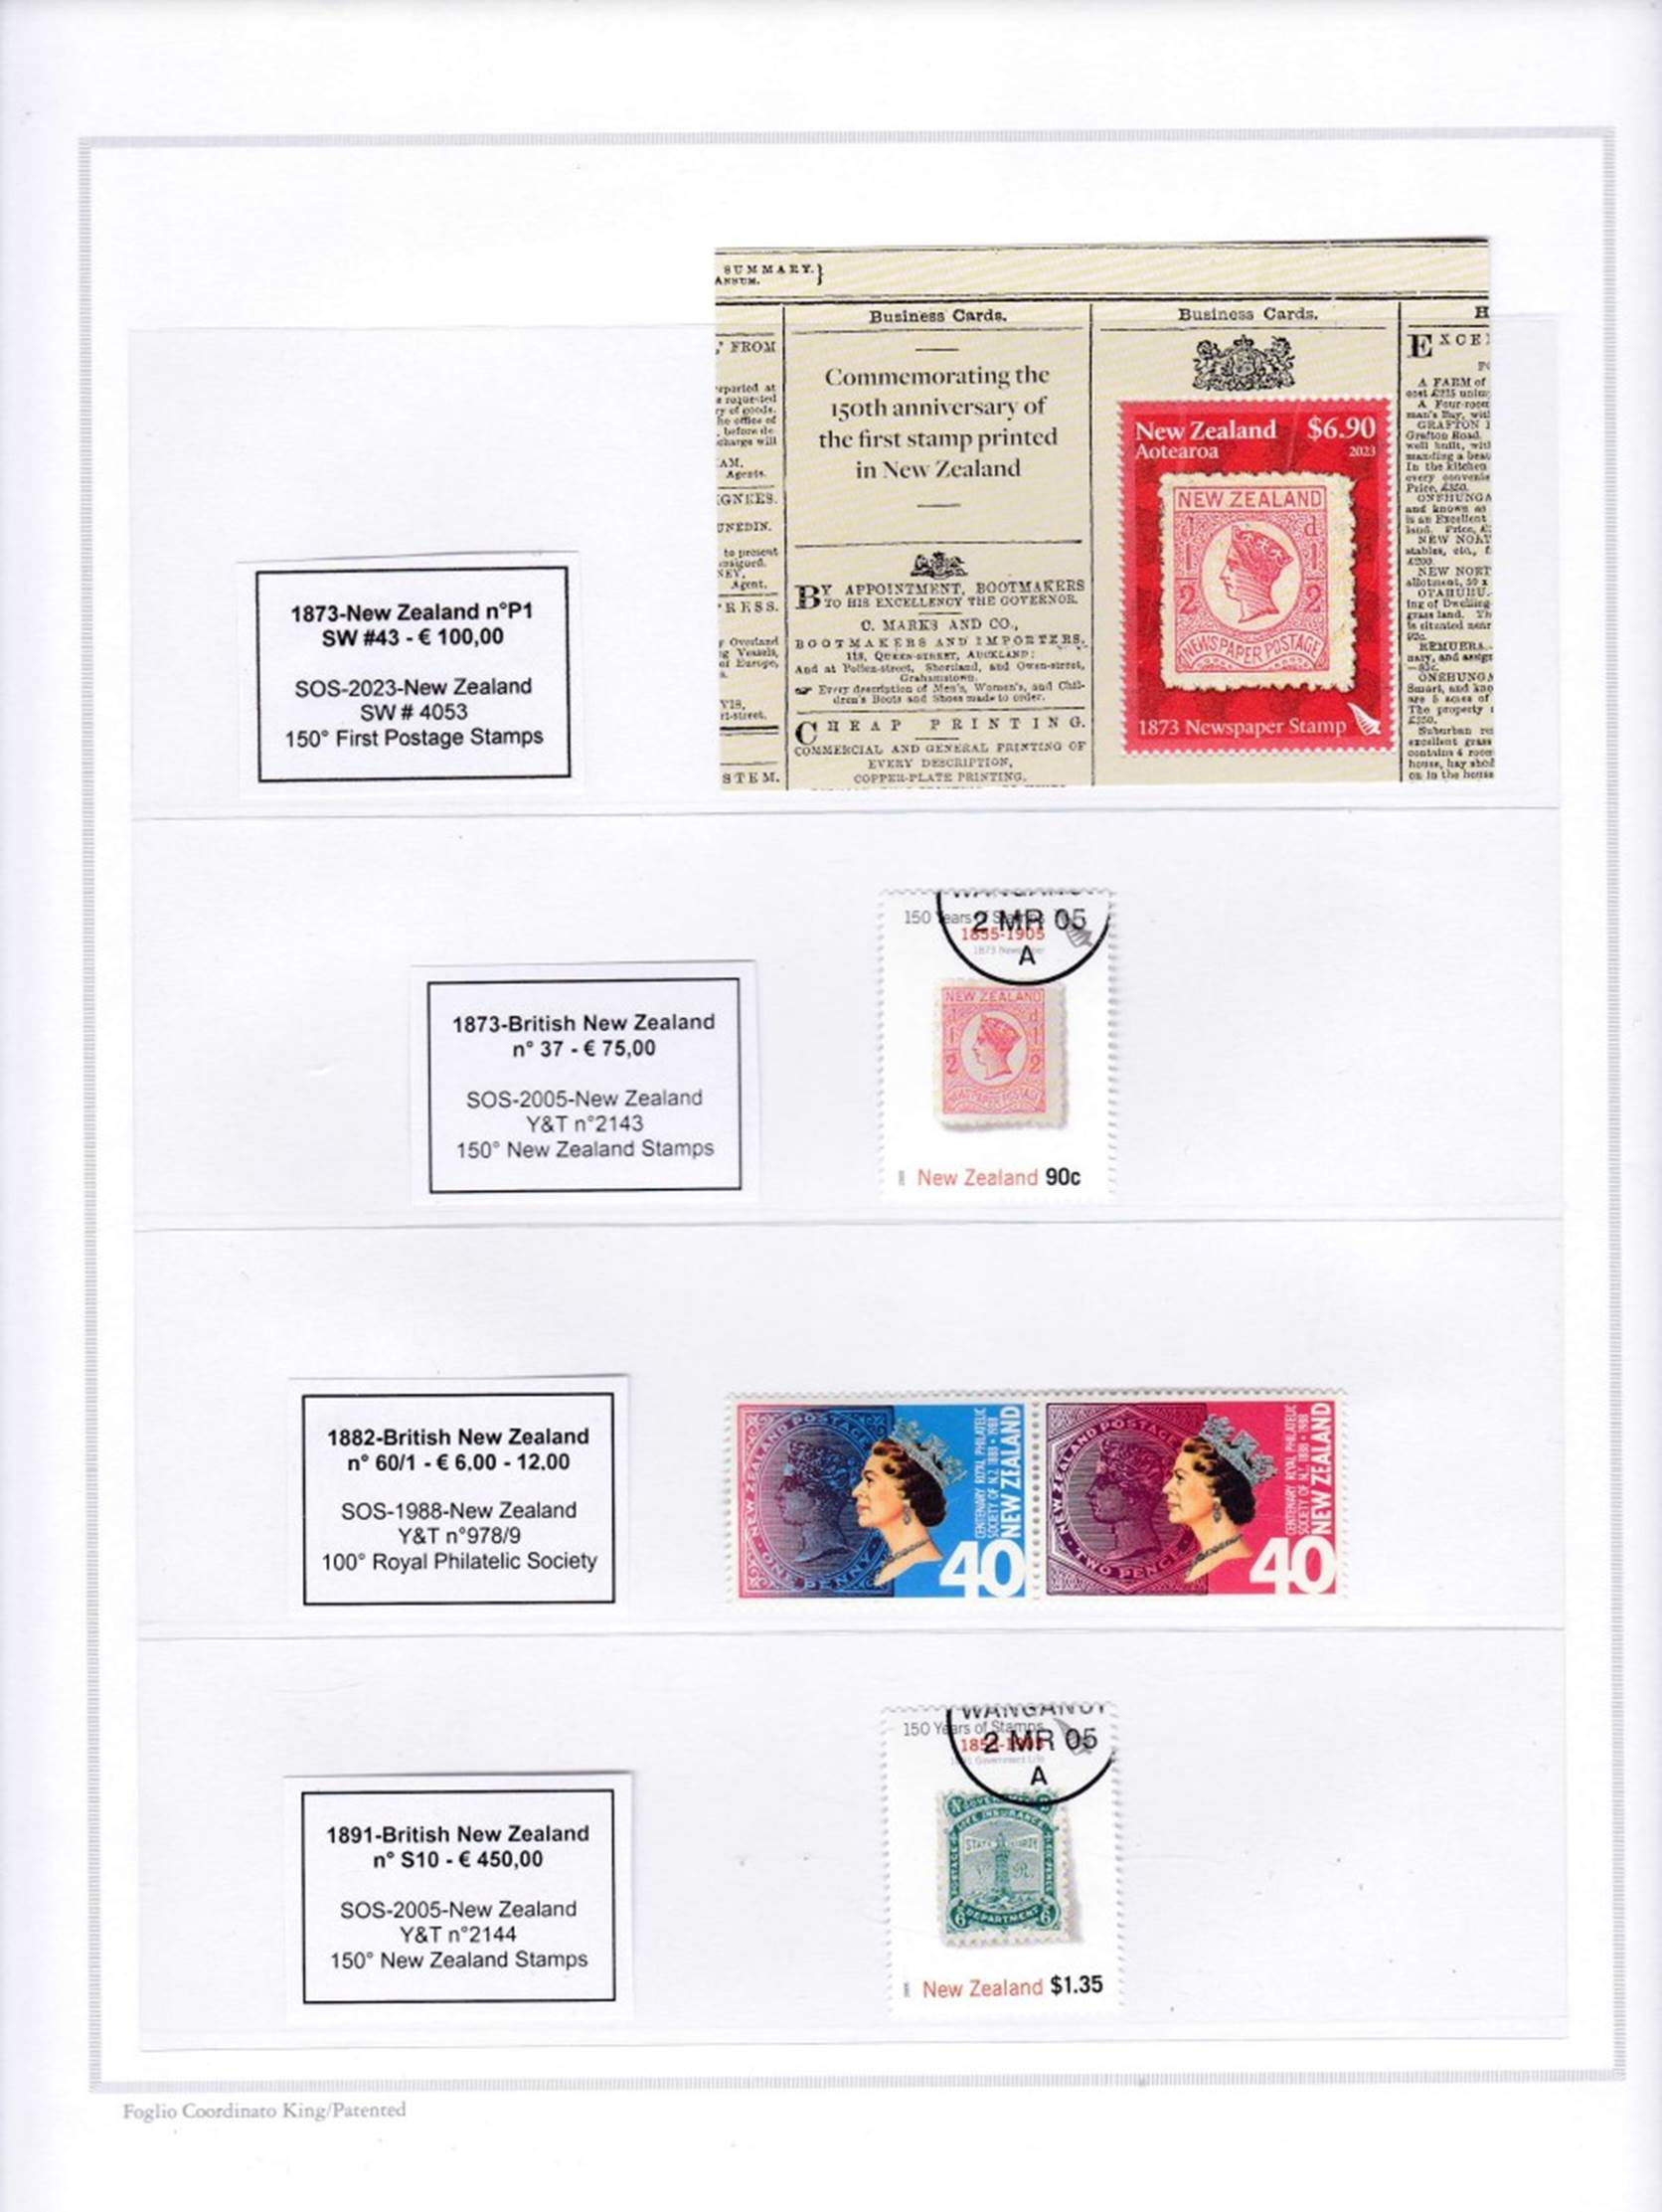 Immagine che contiene testo, francobollo, Prodotto di carta, frigorifero

Descrizione generata automaticamente